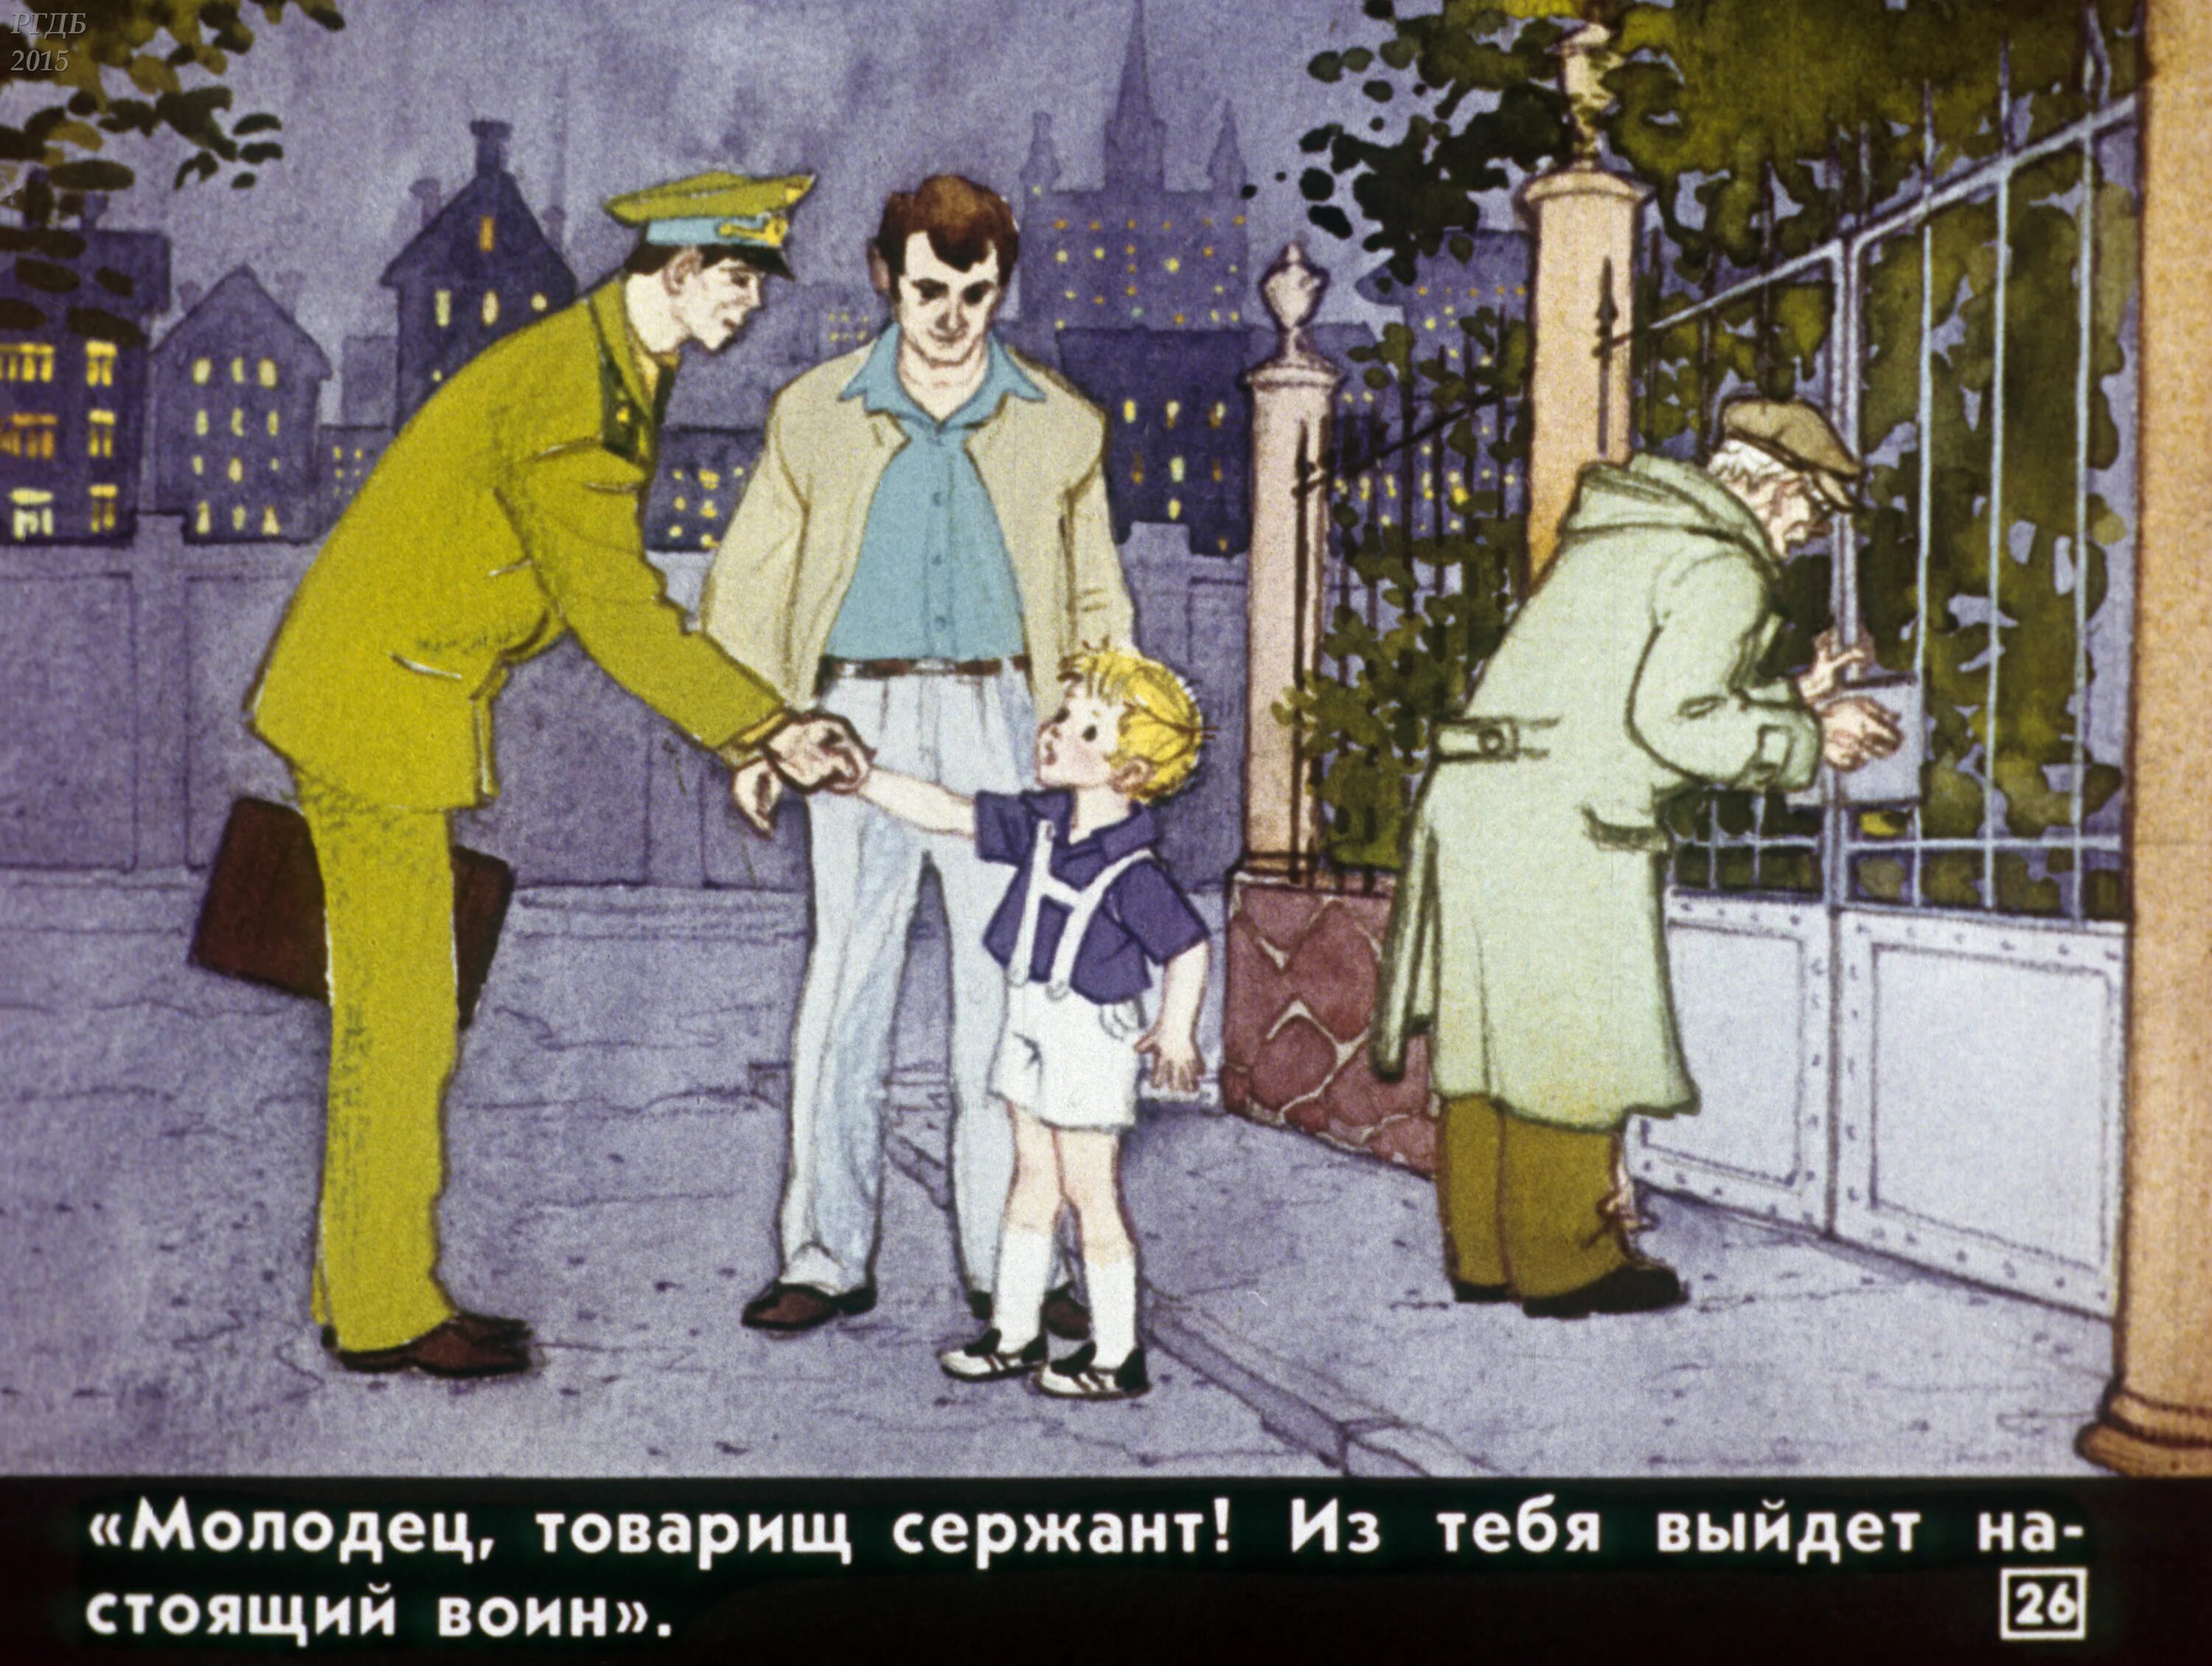 Под честного слова. «Честное слово» л. Пантелеева (1941). Иллюстрации к произведению Пантелеева честное слово.